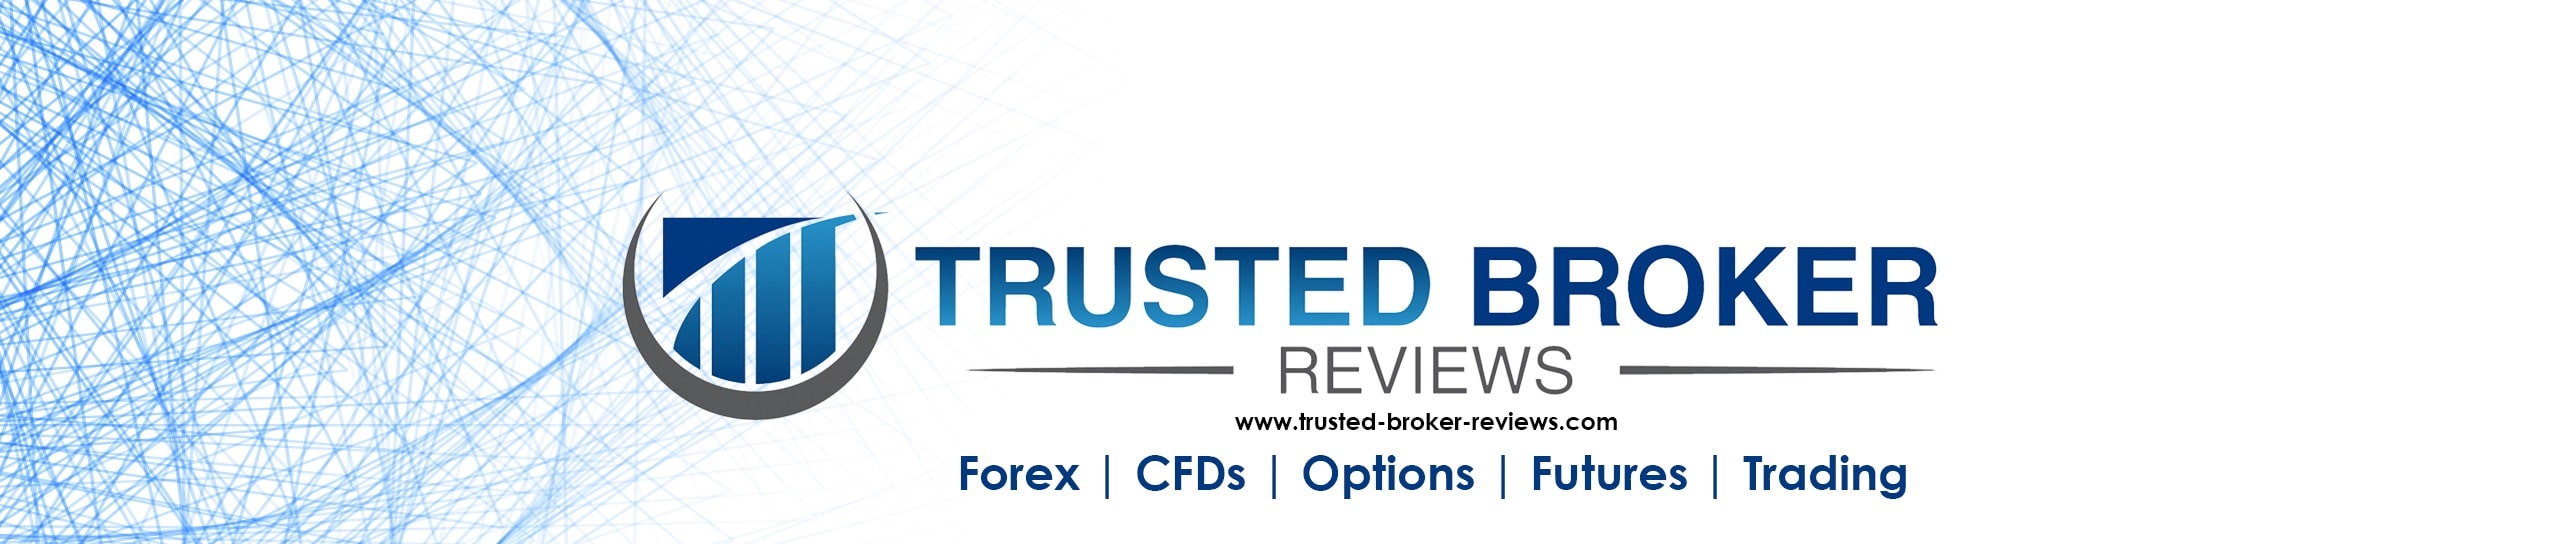 Trusted Broker Reviews Hakkımızda Logo